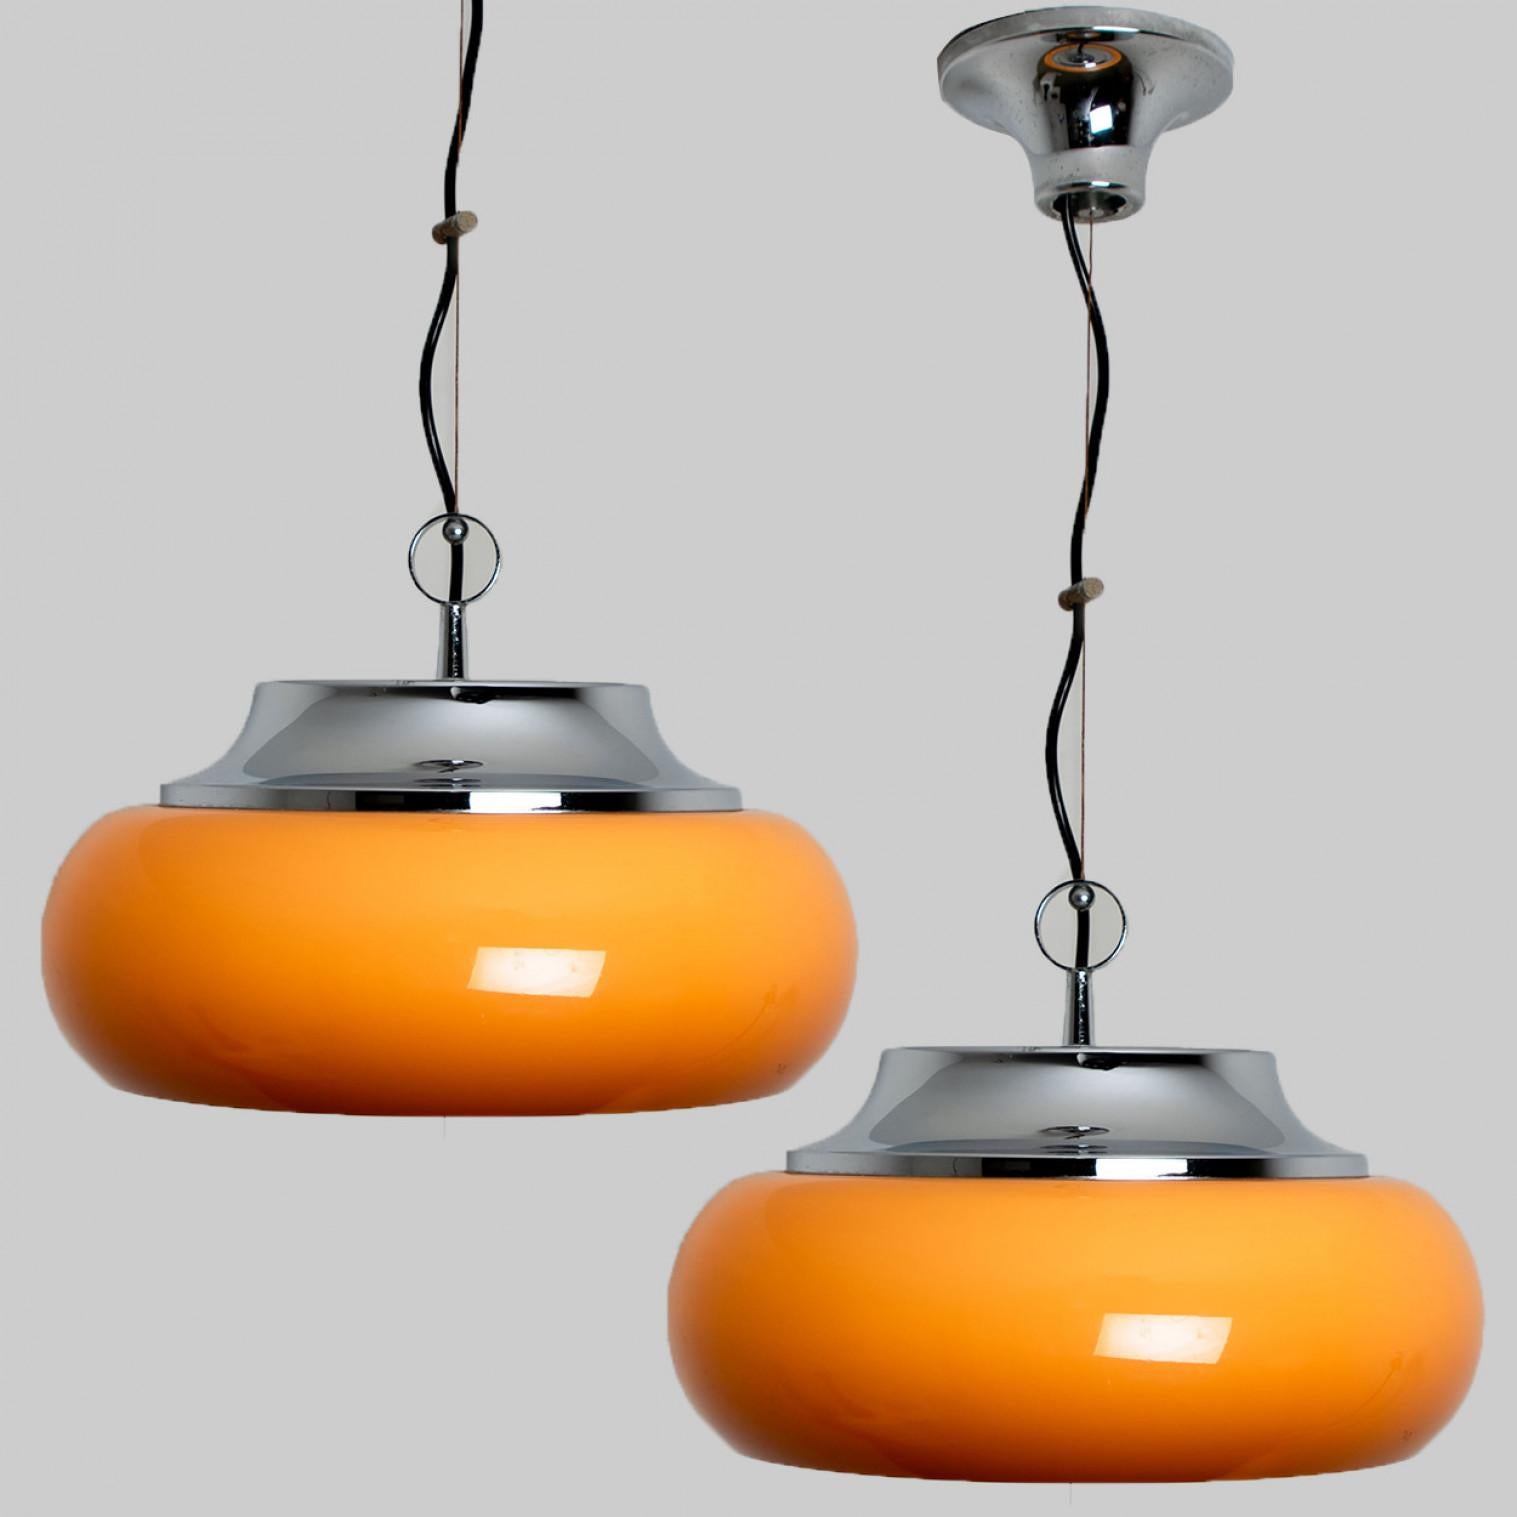 Paire de magnifiques lampes suspendues Guzzini fabriquées par Meblo Yugoslavia dans les années 1970.
Une suspension très amusante, dans le style Space and Chrome et rétro, grâce à l'utilisation de chrome et de verre plexi orange marron.
Grâce au